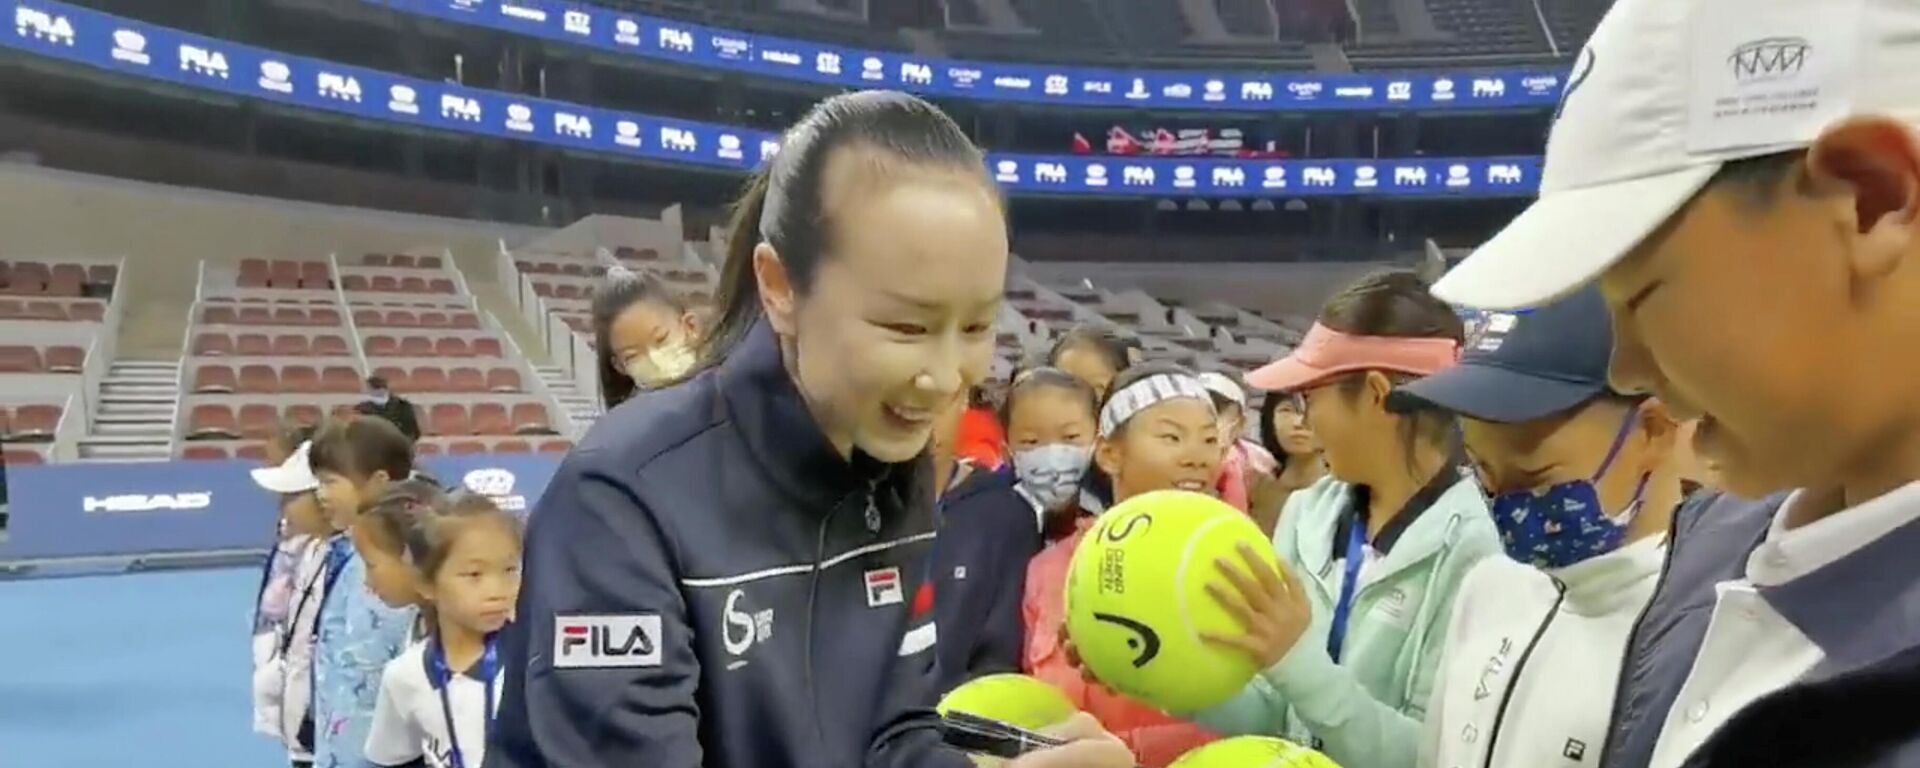 لاعبة التنس الصينية، بينغ شواي، توقع كرات تنس كبيرة الحجم في حفل افتتاح نهائي فيلا كيدز تنس جونيور في بكين، في أول ظهور لها بعد حادث اختفائها، 21 نوفمبر/ تشرين الثاني 2021 - سبوتنيك عربي, 1920, 23.11.2021